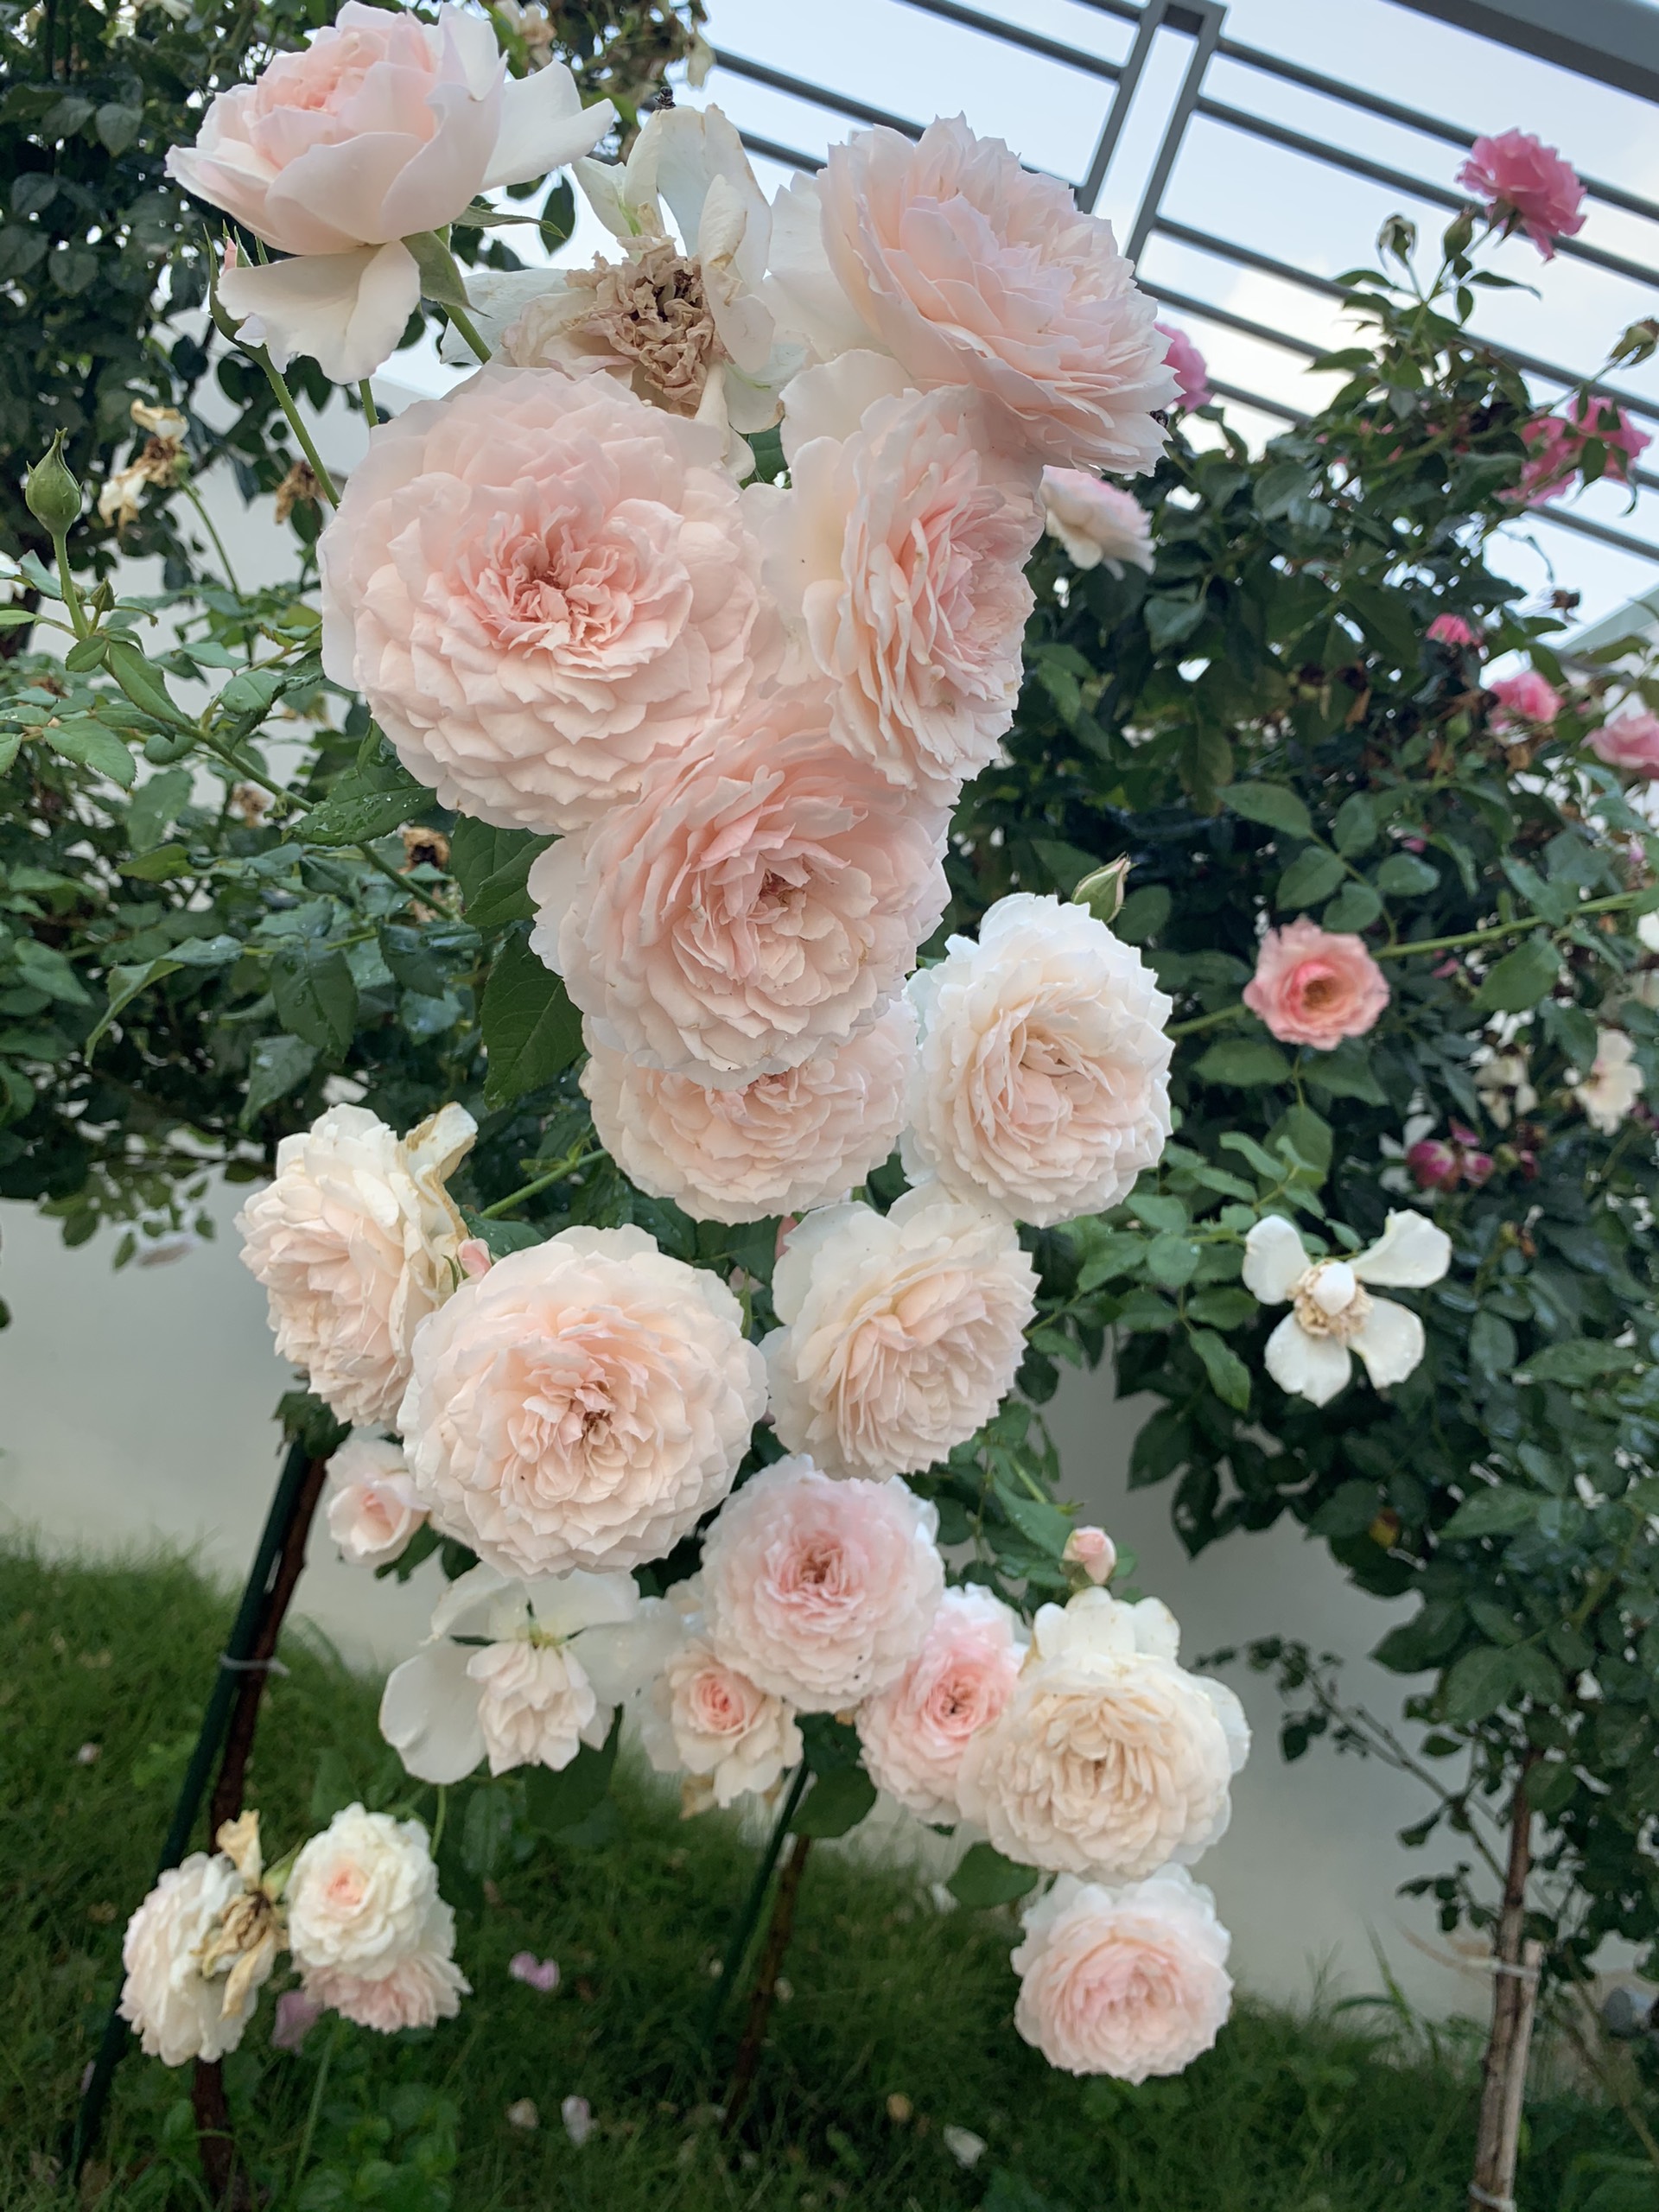 Cùng khám phá hình nền đầy thơ mộng với vườn hoa hồng tràn đầy màu sắc và hương thơm dịu ngọt. Hình nền này sẽ khiến bạn cảm thấy như đang đắm chìm trong một thế giới hoa đầy mê hoặc và tươi vui.